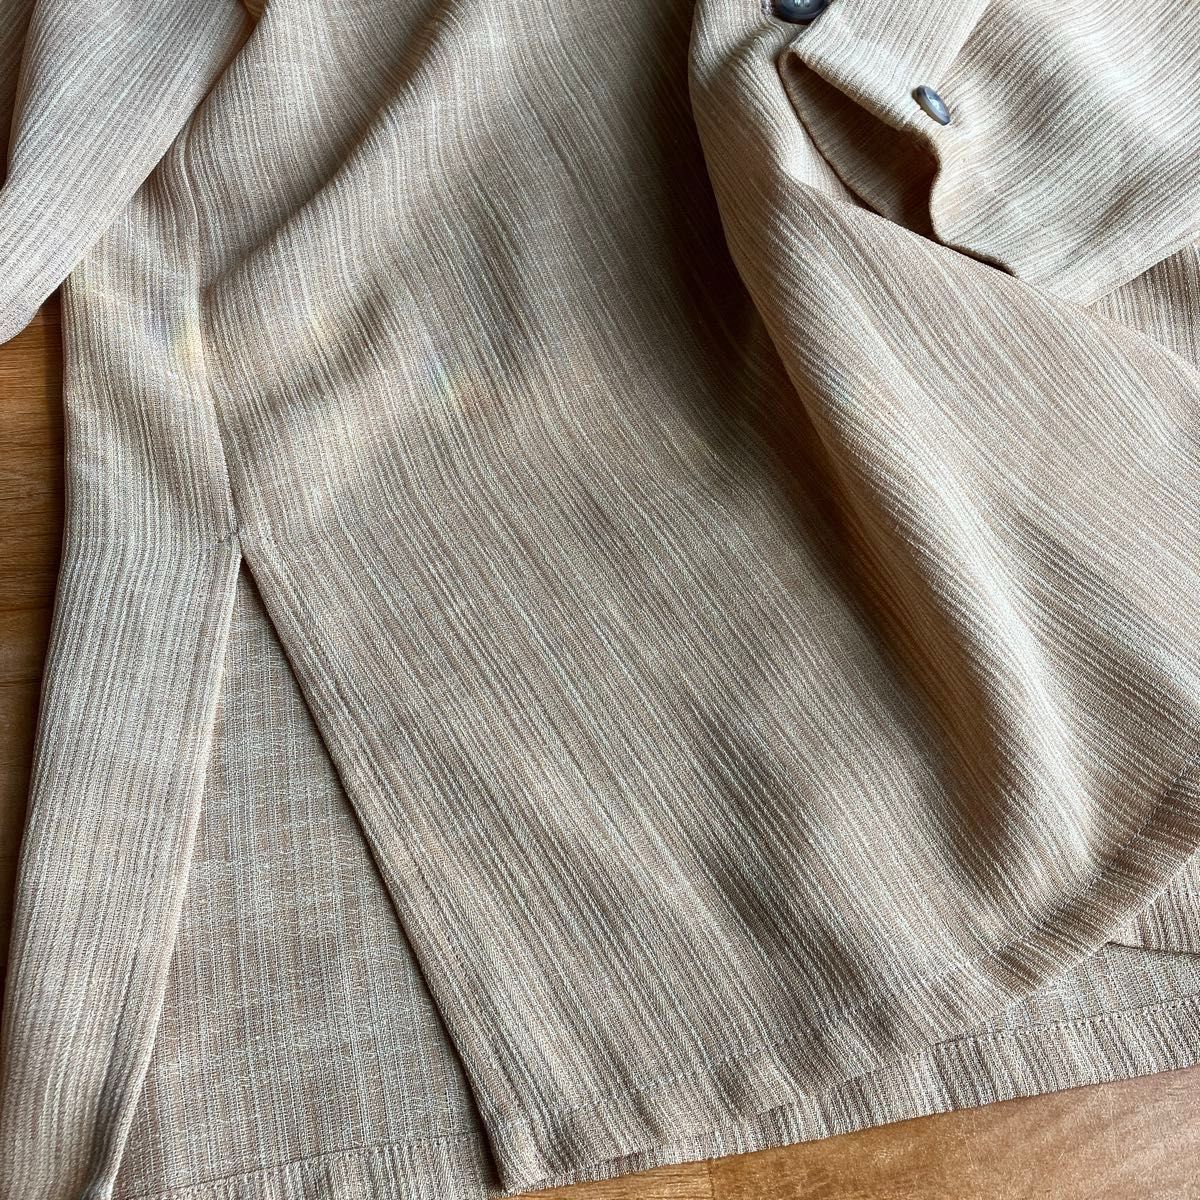 テーラードジャケット シングル 上着 ジャケット 昭和レトロ シニア 中高年 羽織もの 薄手 春 夏 ブラウン 茶系 麻